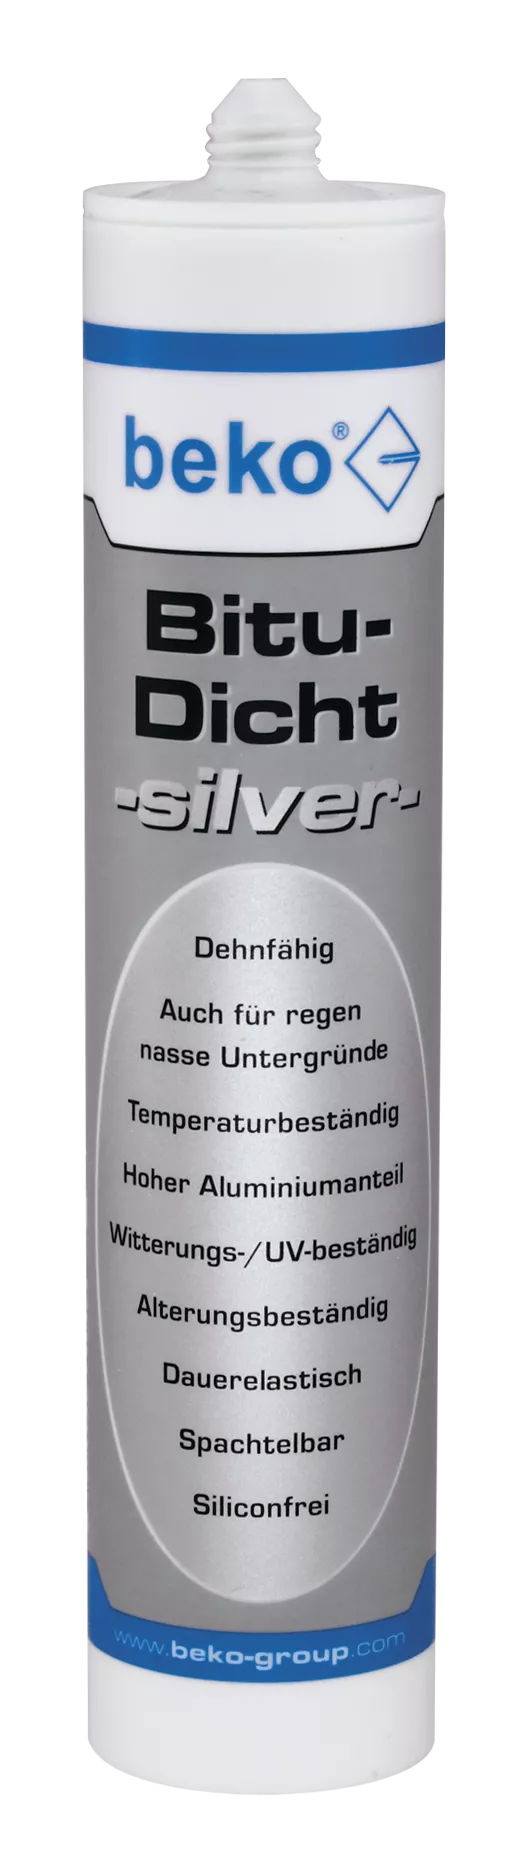 beko Bitu-Dicht -silver- 310 ml silbergrau